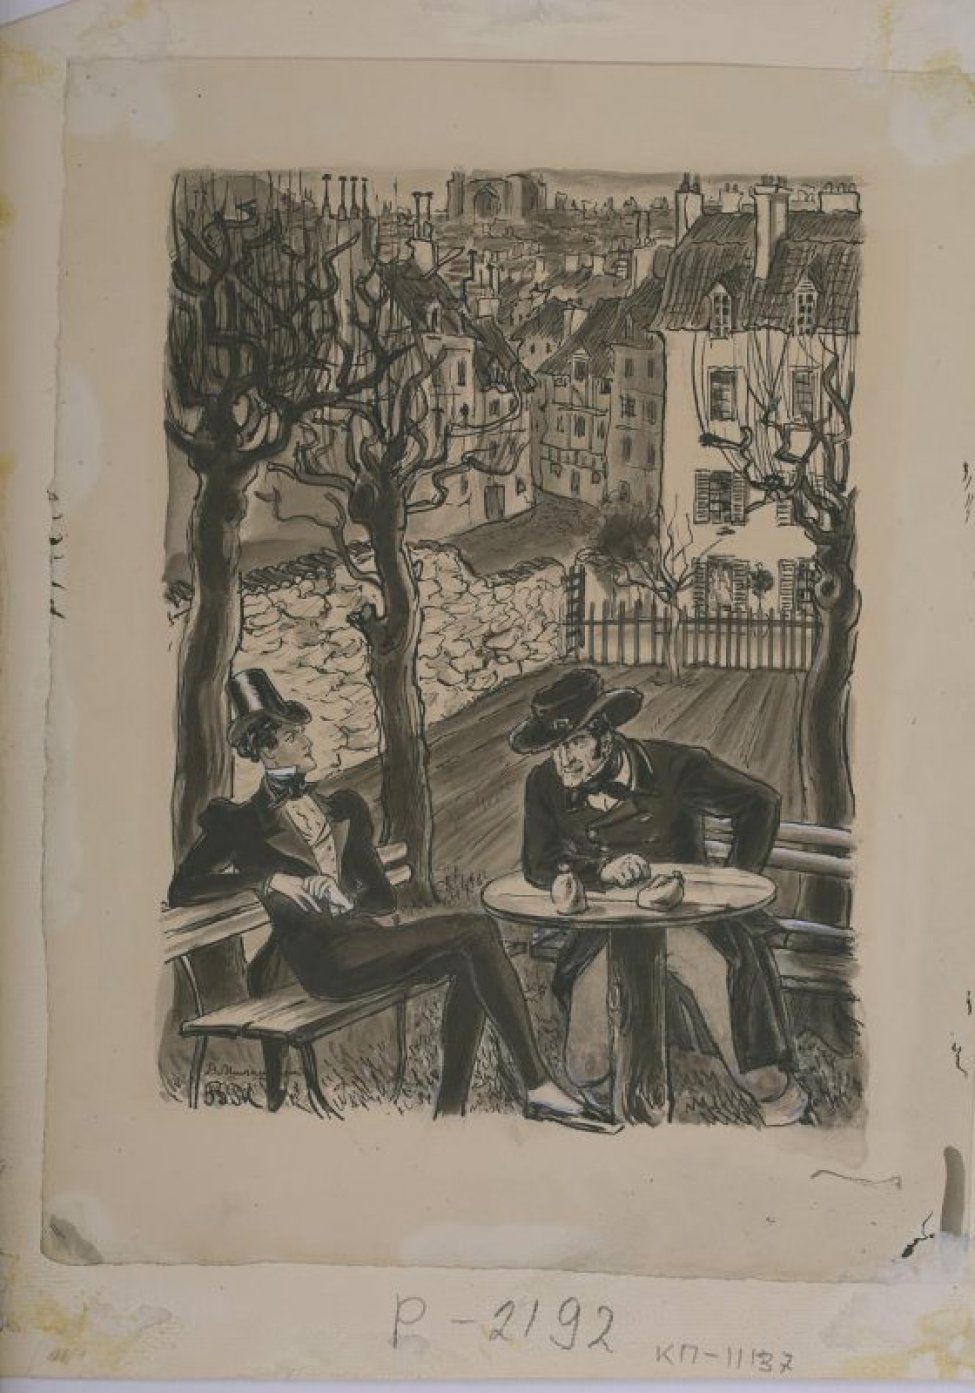 на фоне городского пейзажа изображены двое мужчин, сидящие возле круглого столика под деревьями с обнаженной кроной.  Слева - молодой мужчина в цилиндре и во фраке, справа - мужчина средних лет в широкополой шляпе и в сюртуке.